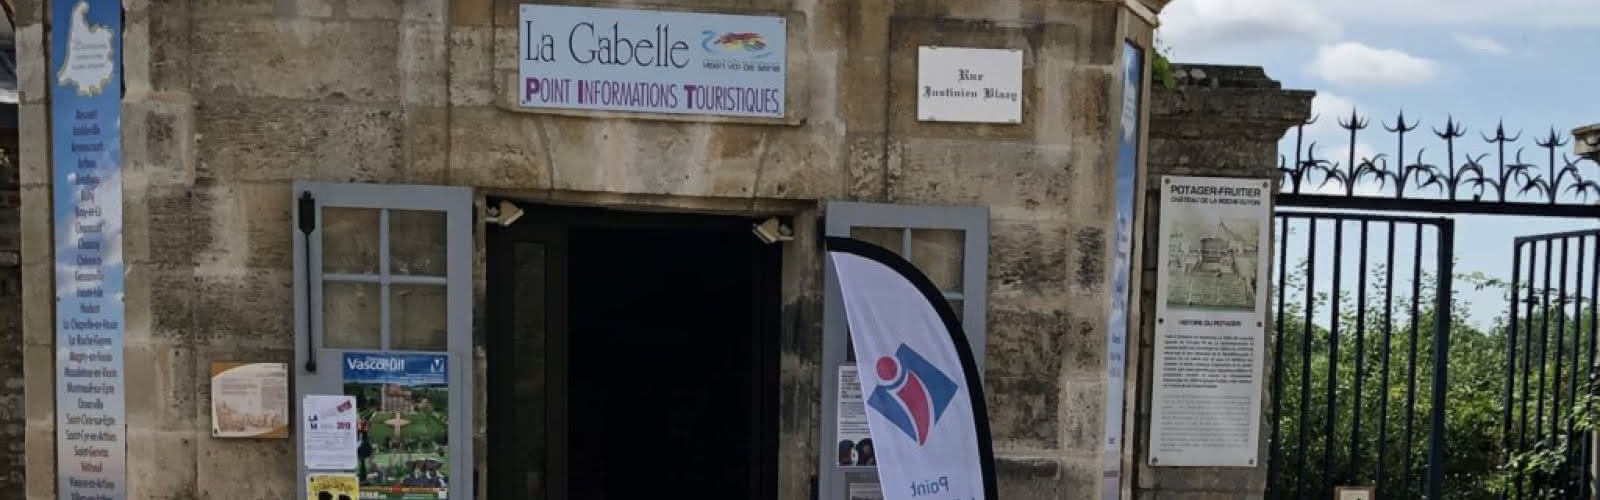 La Gabelle – Point Info Tourisme